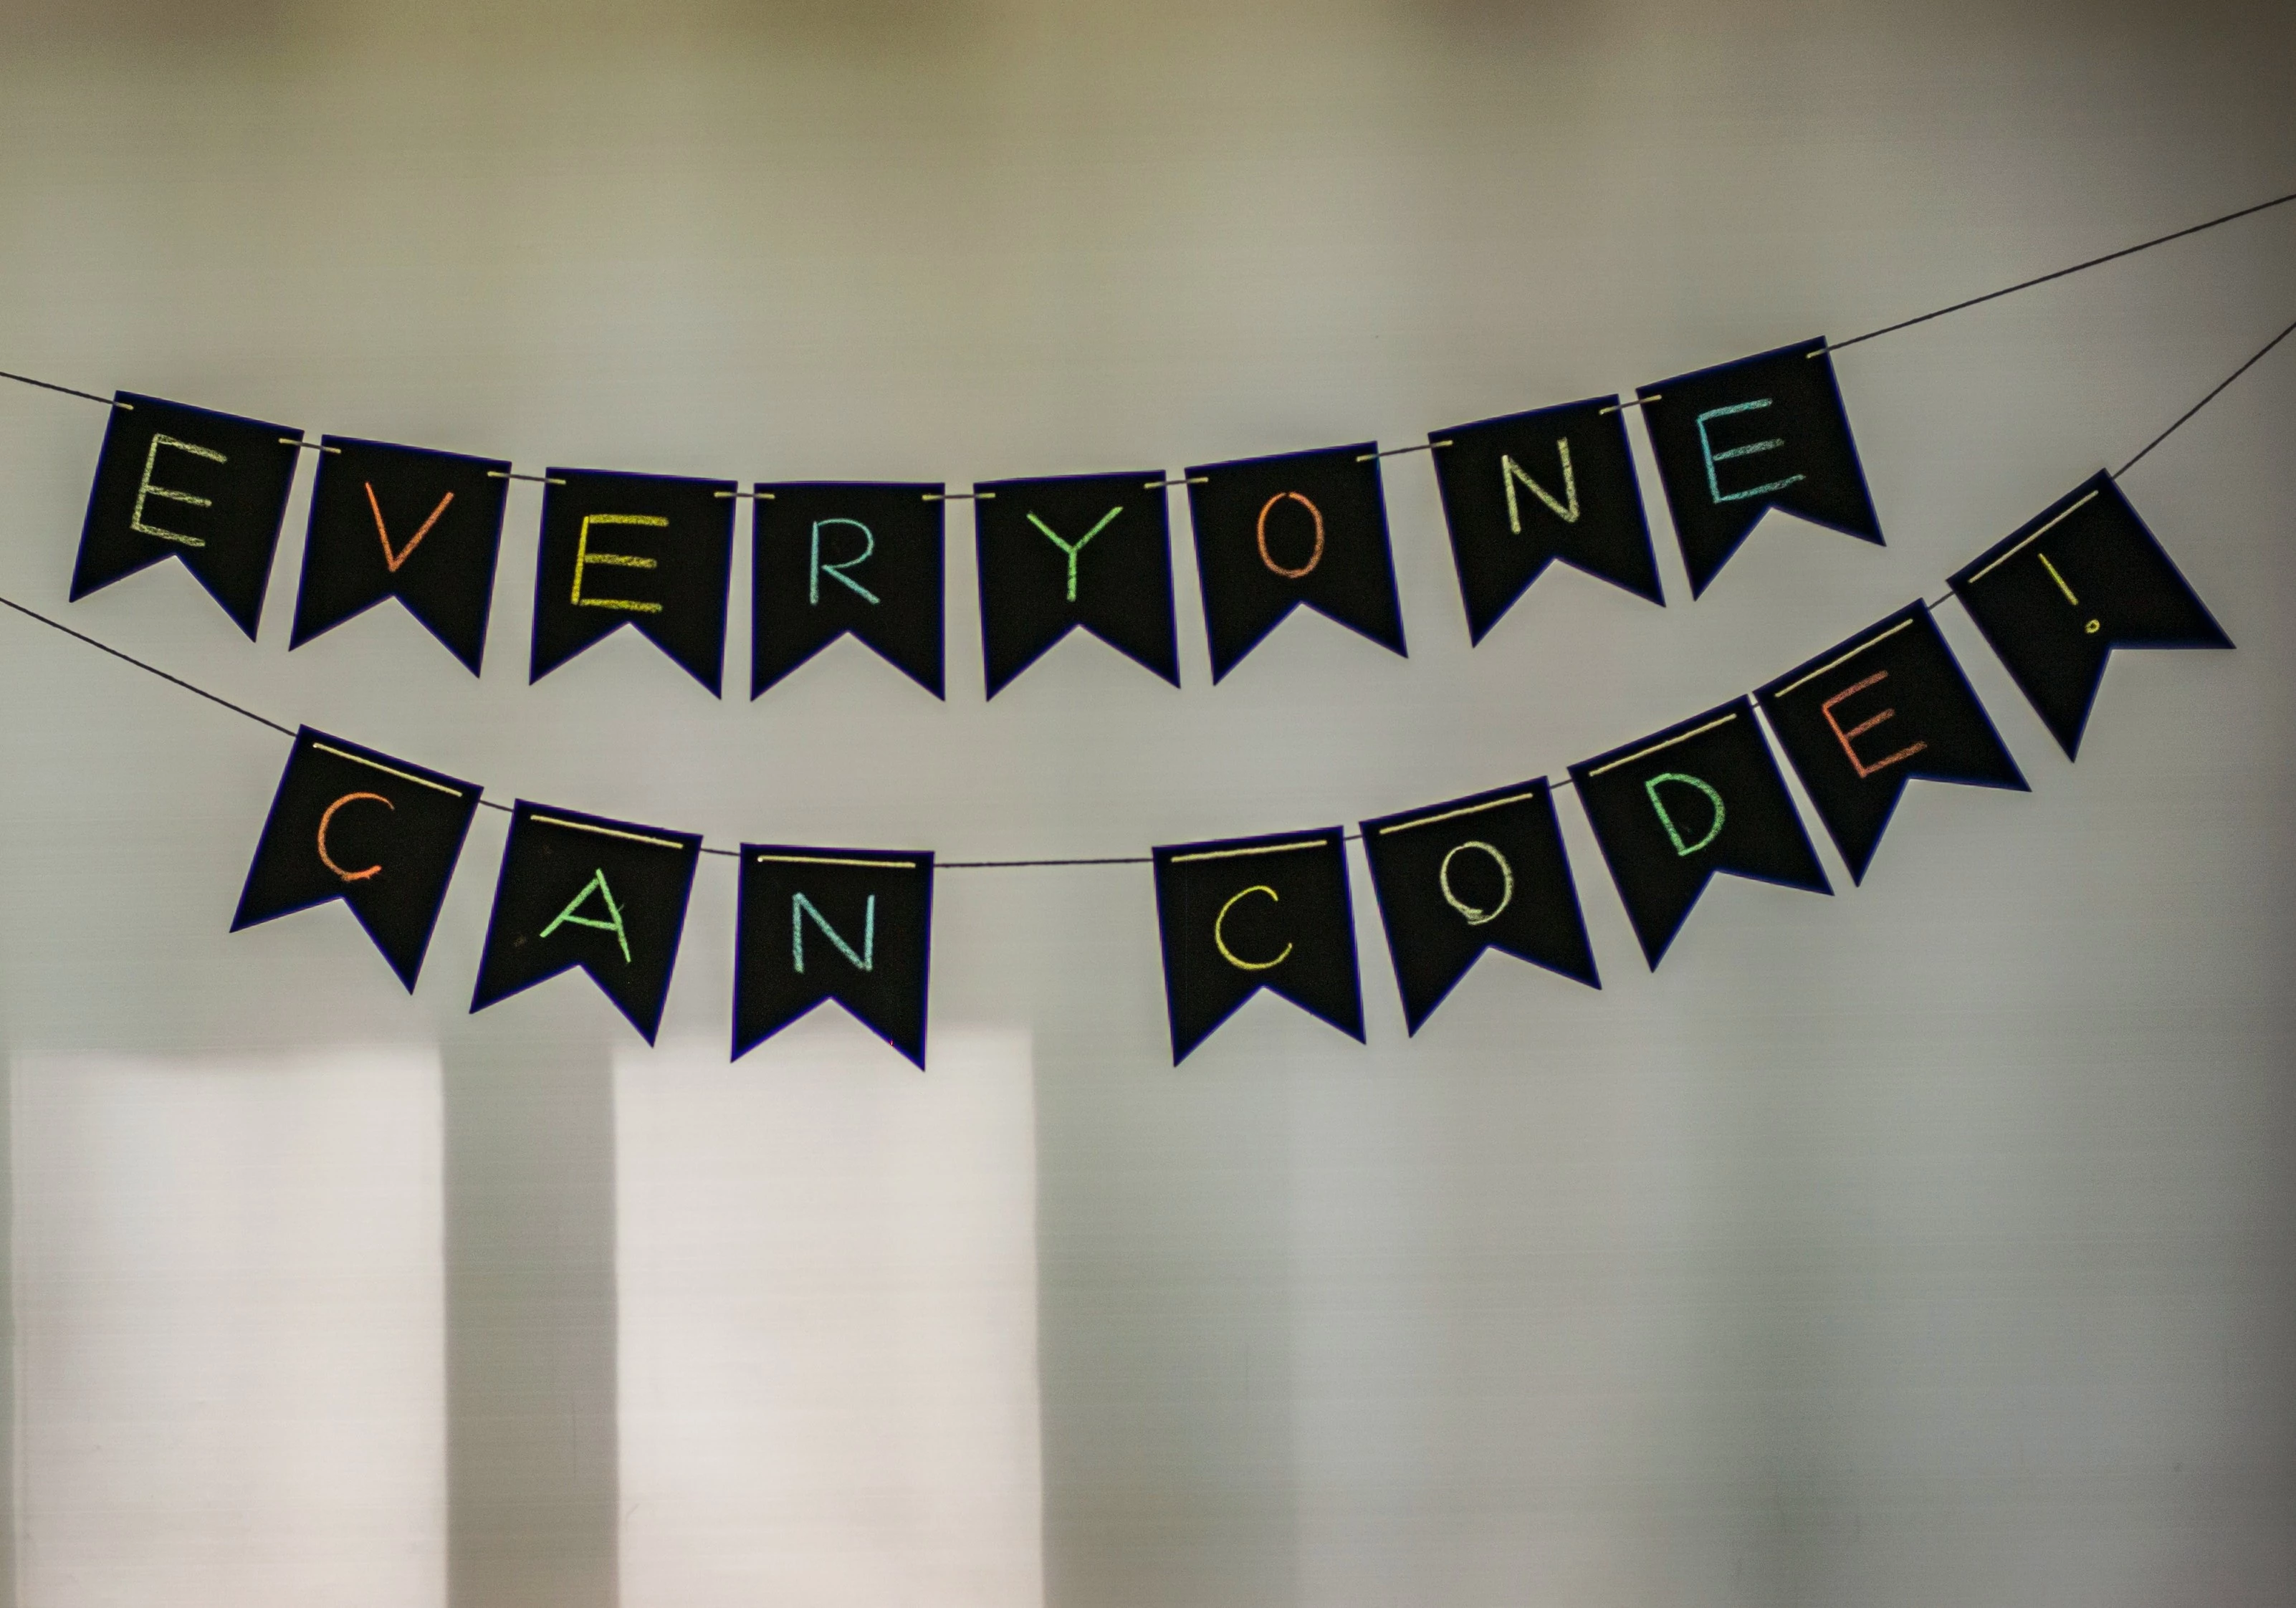 Foto einer Wimpelkette mit den Worten "Everyone can code"